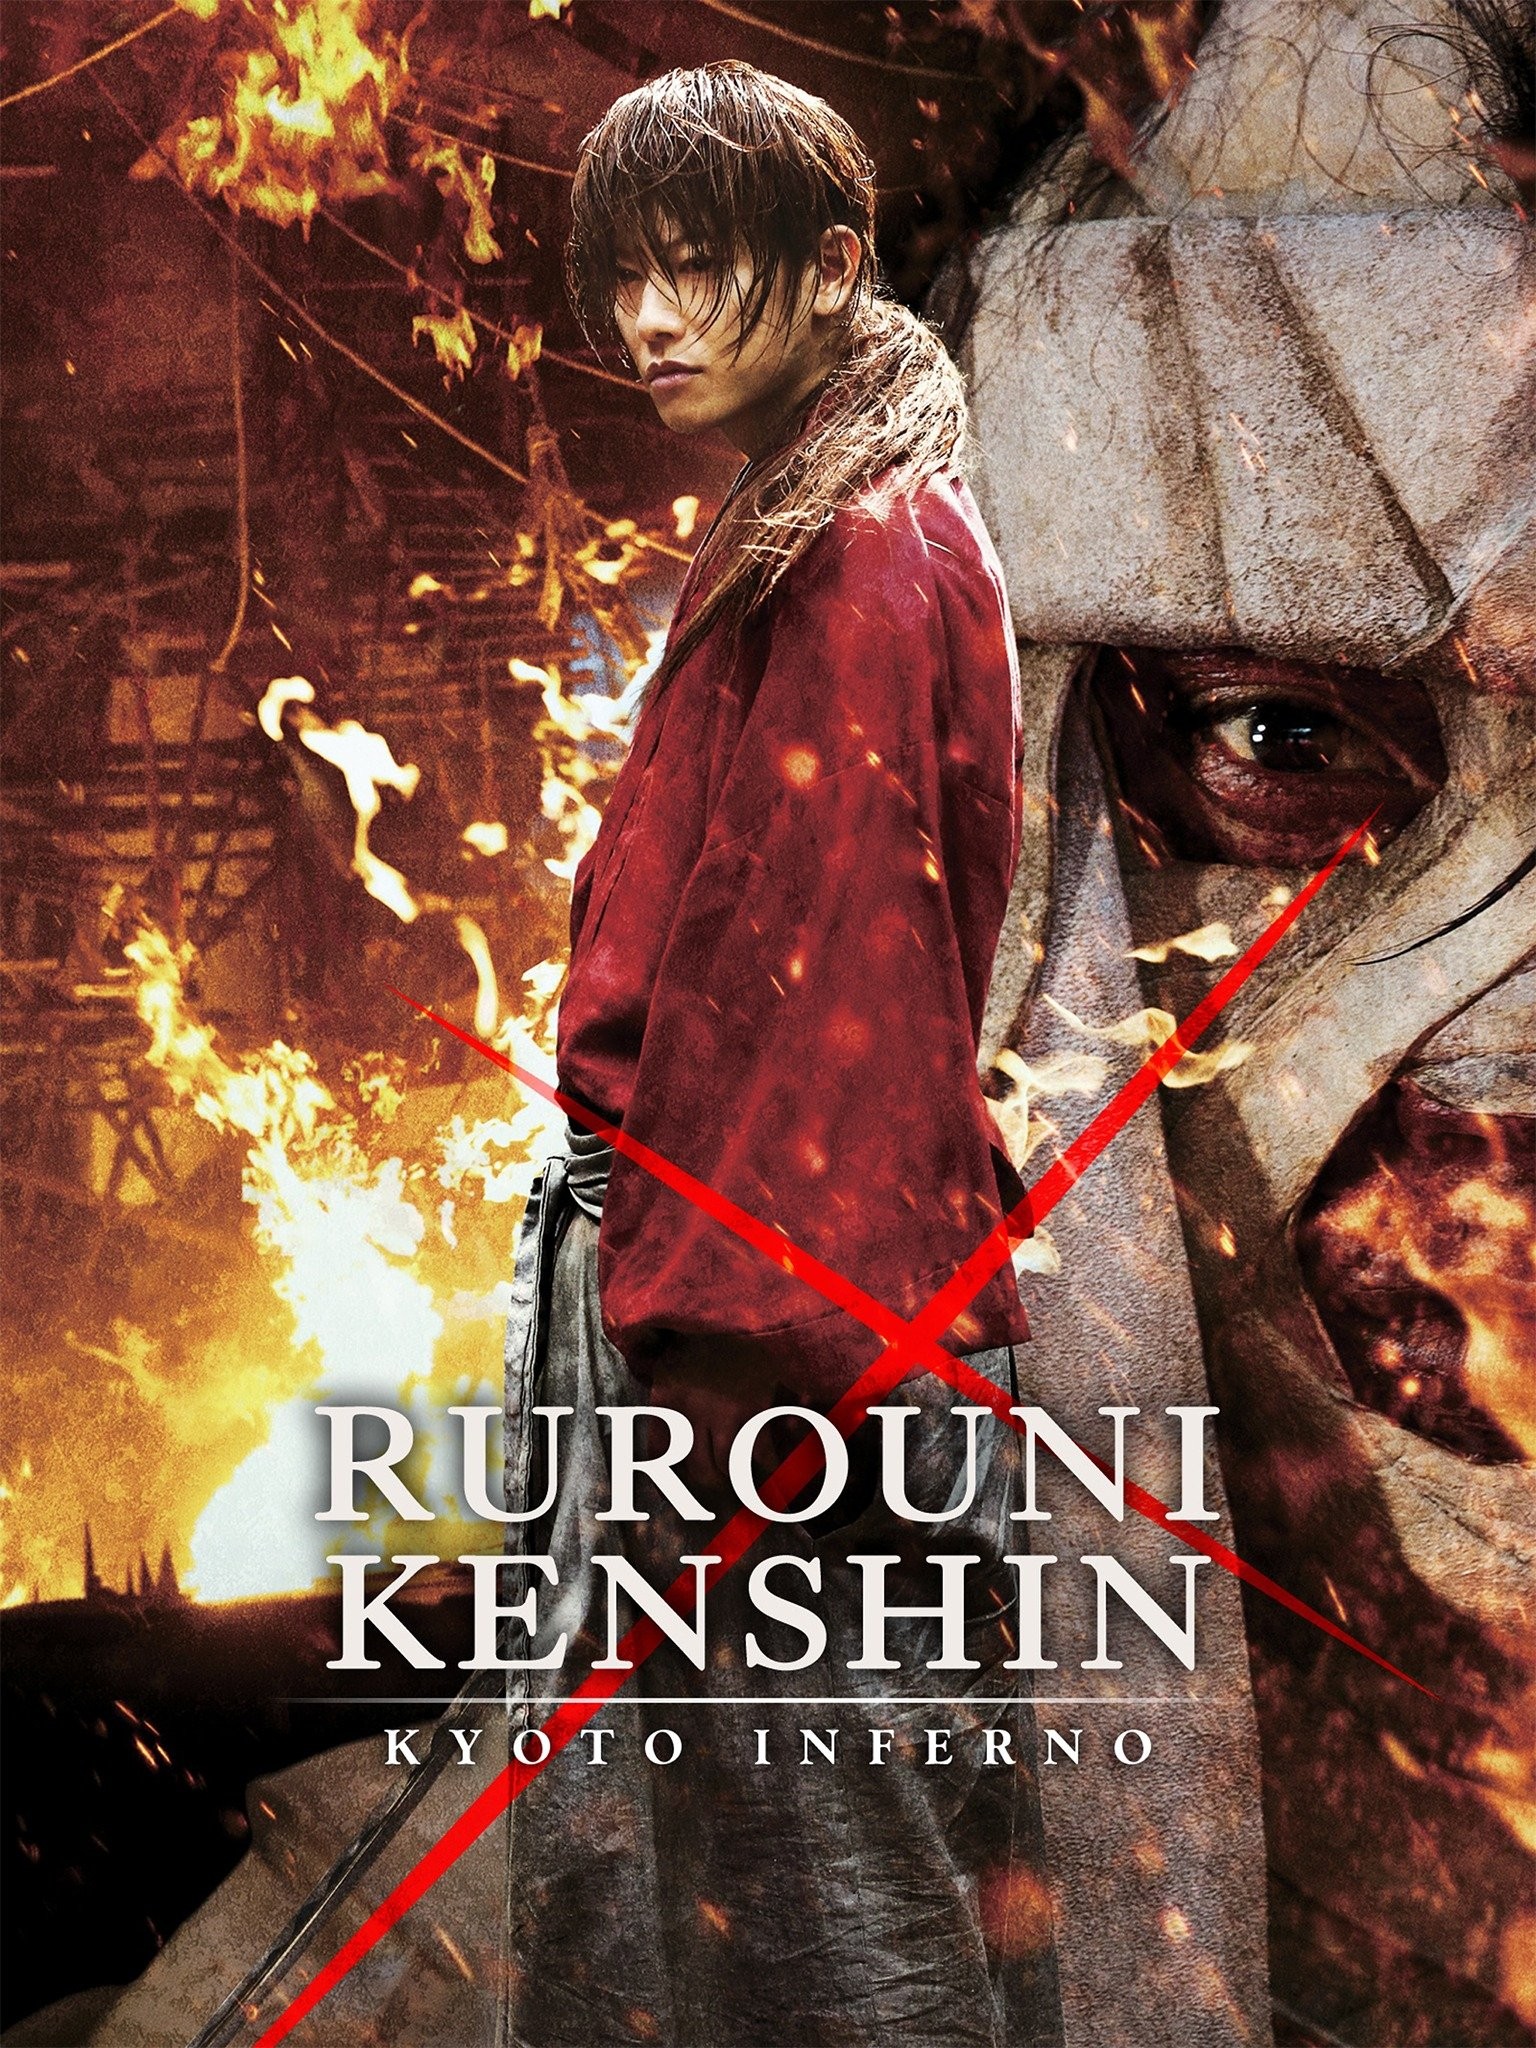 Rurouni Kenshin: The Final - Full Cast & Crew - TV Guide